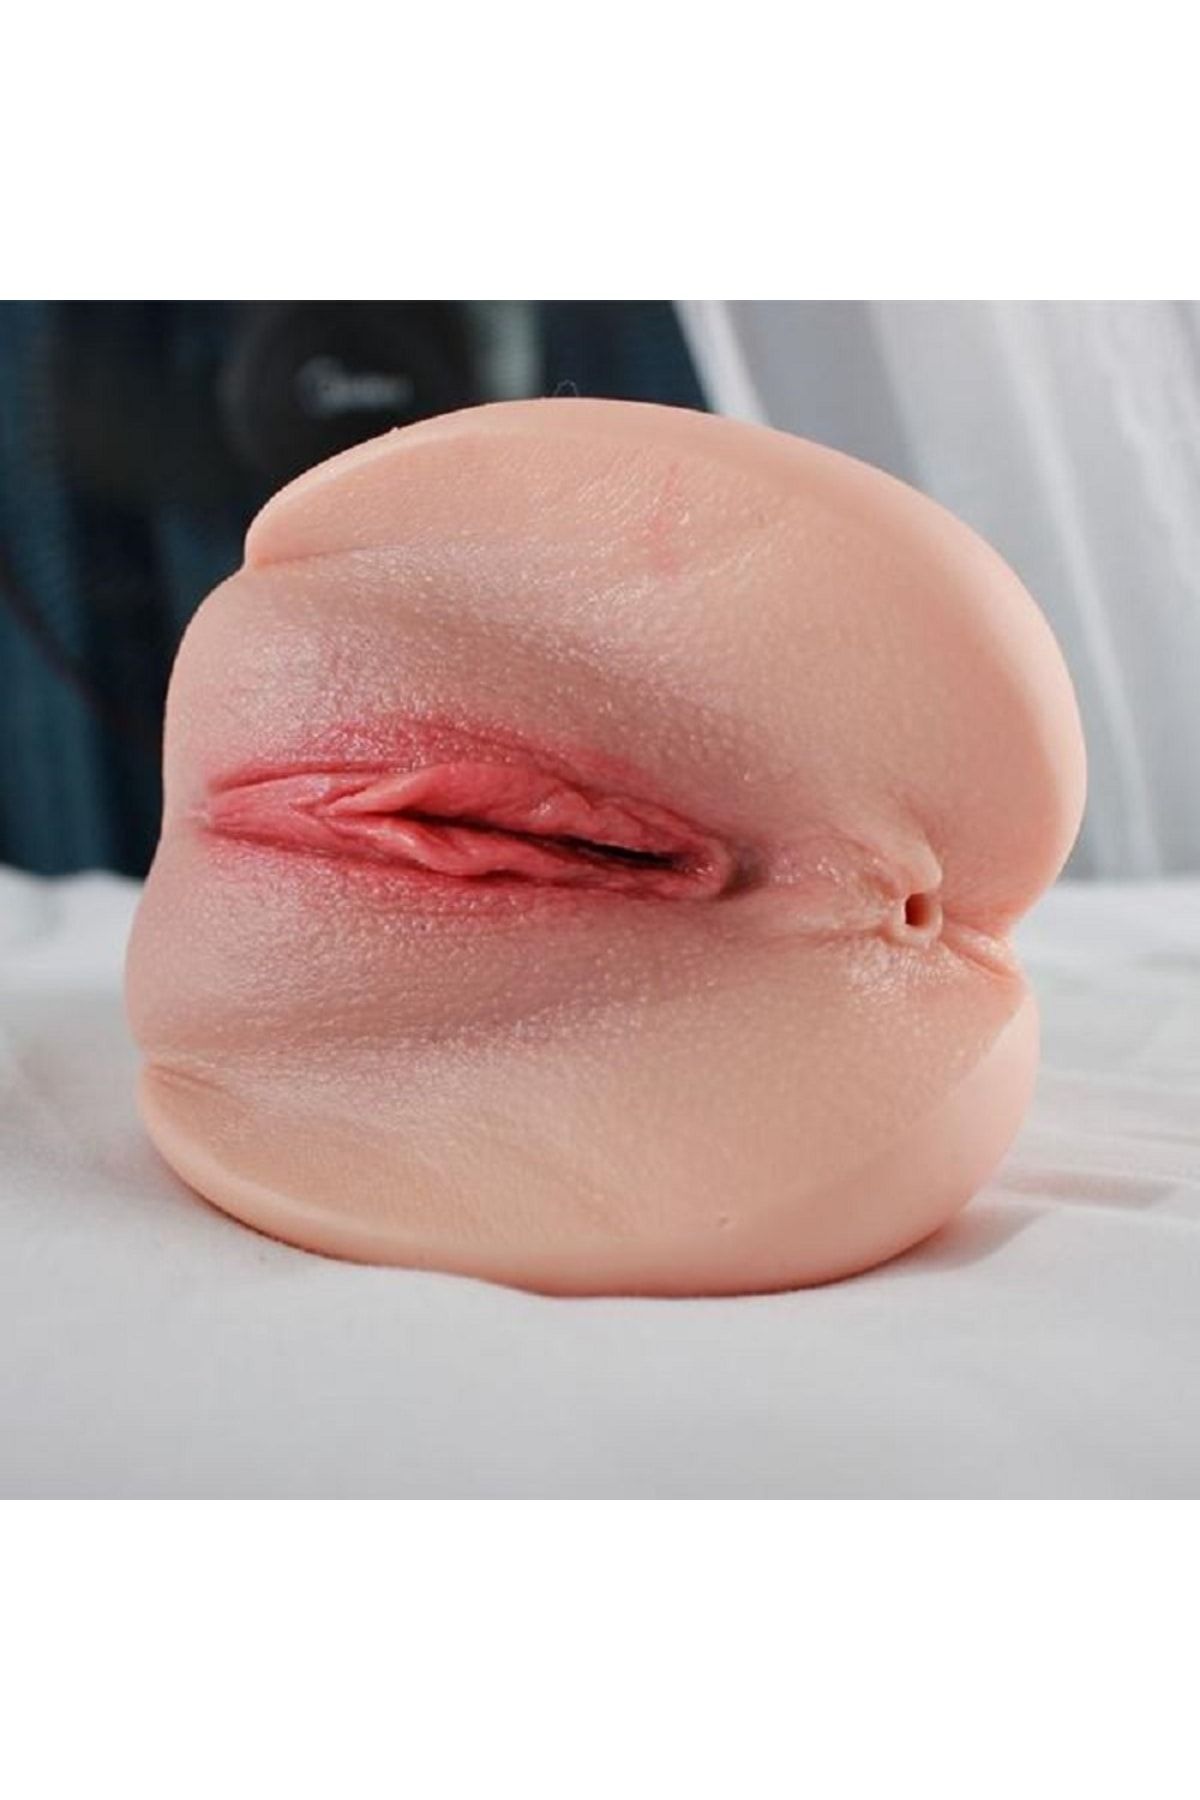 мастурбация резиновой вагиной фото 48